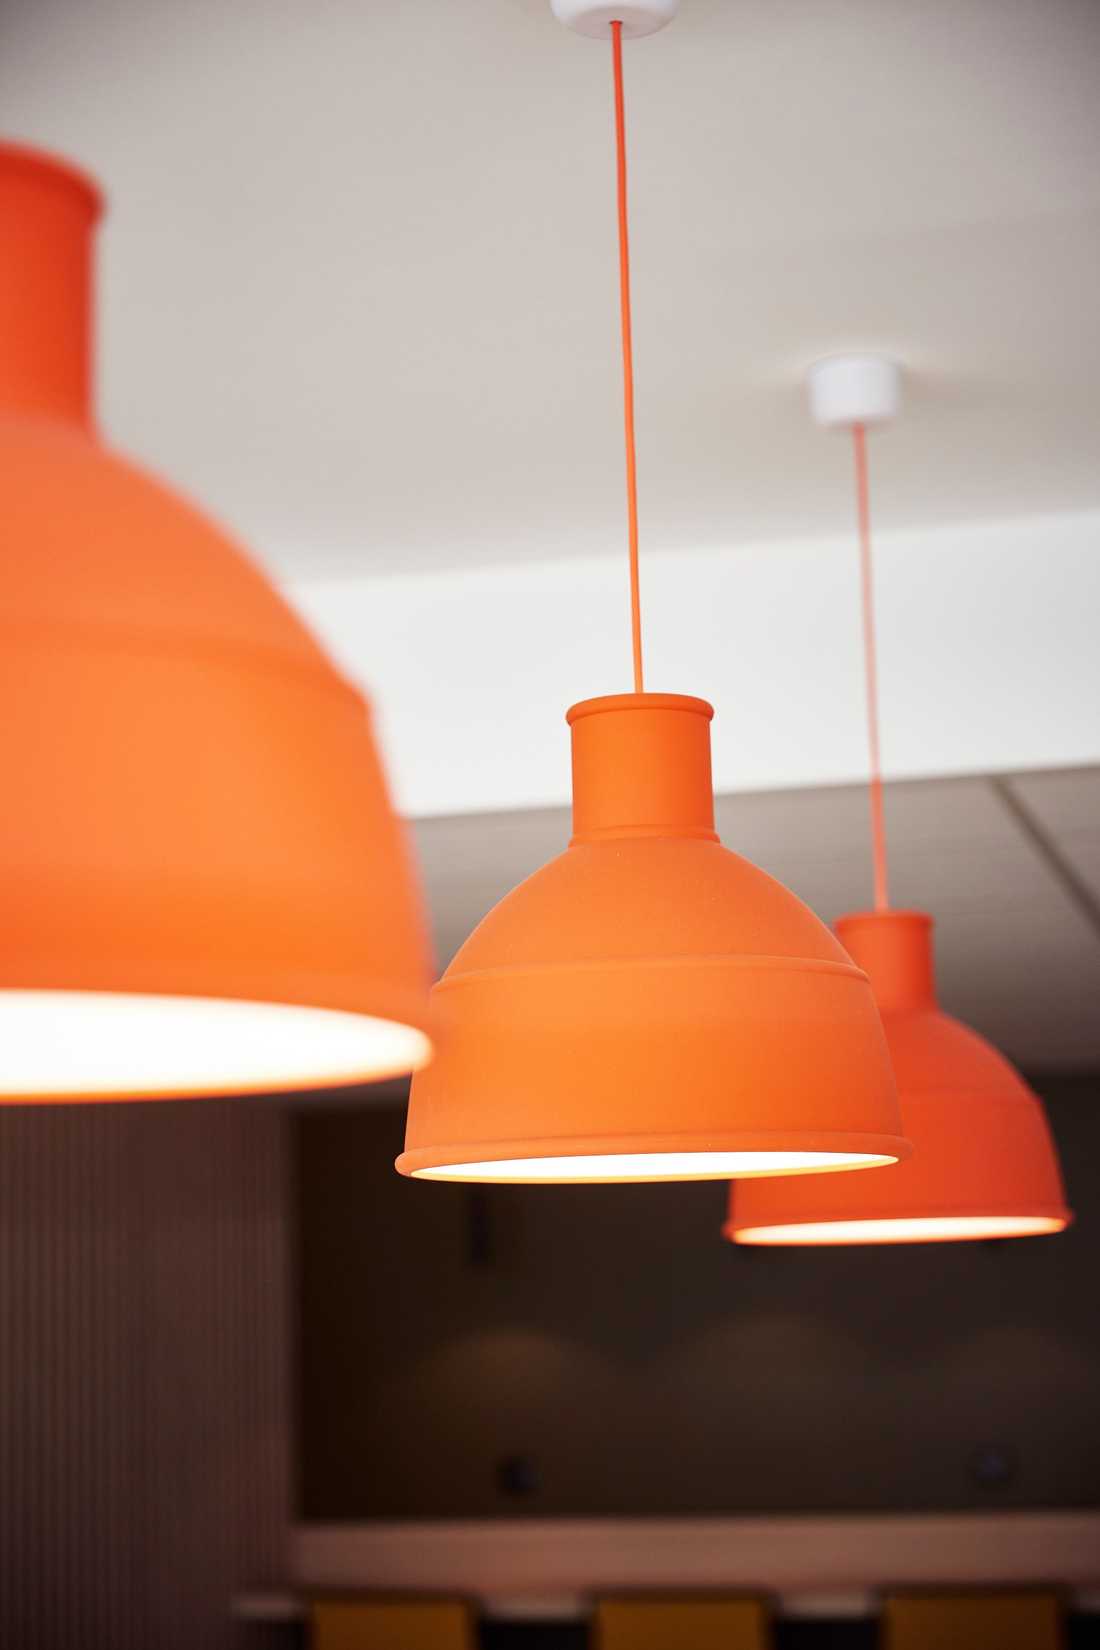 Lampadaires oranges dans les espaces communs de bureaux